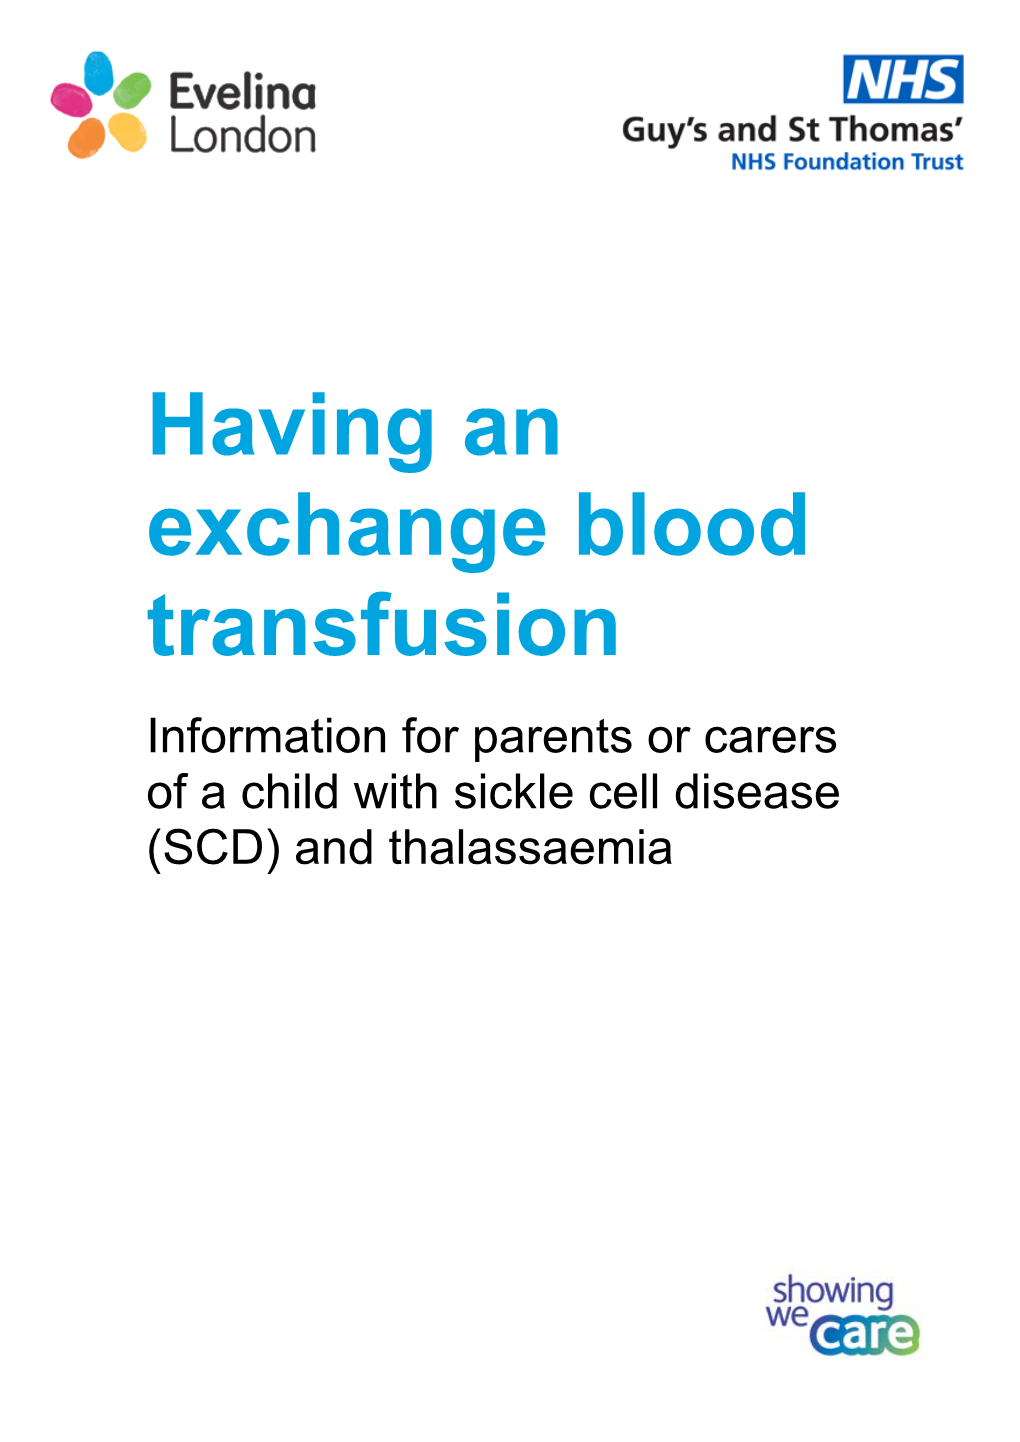 Having an Exchange Blood Transfusion